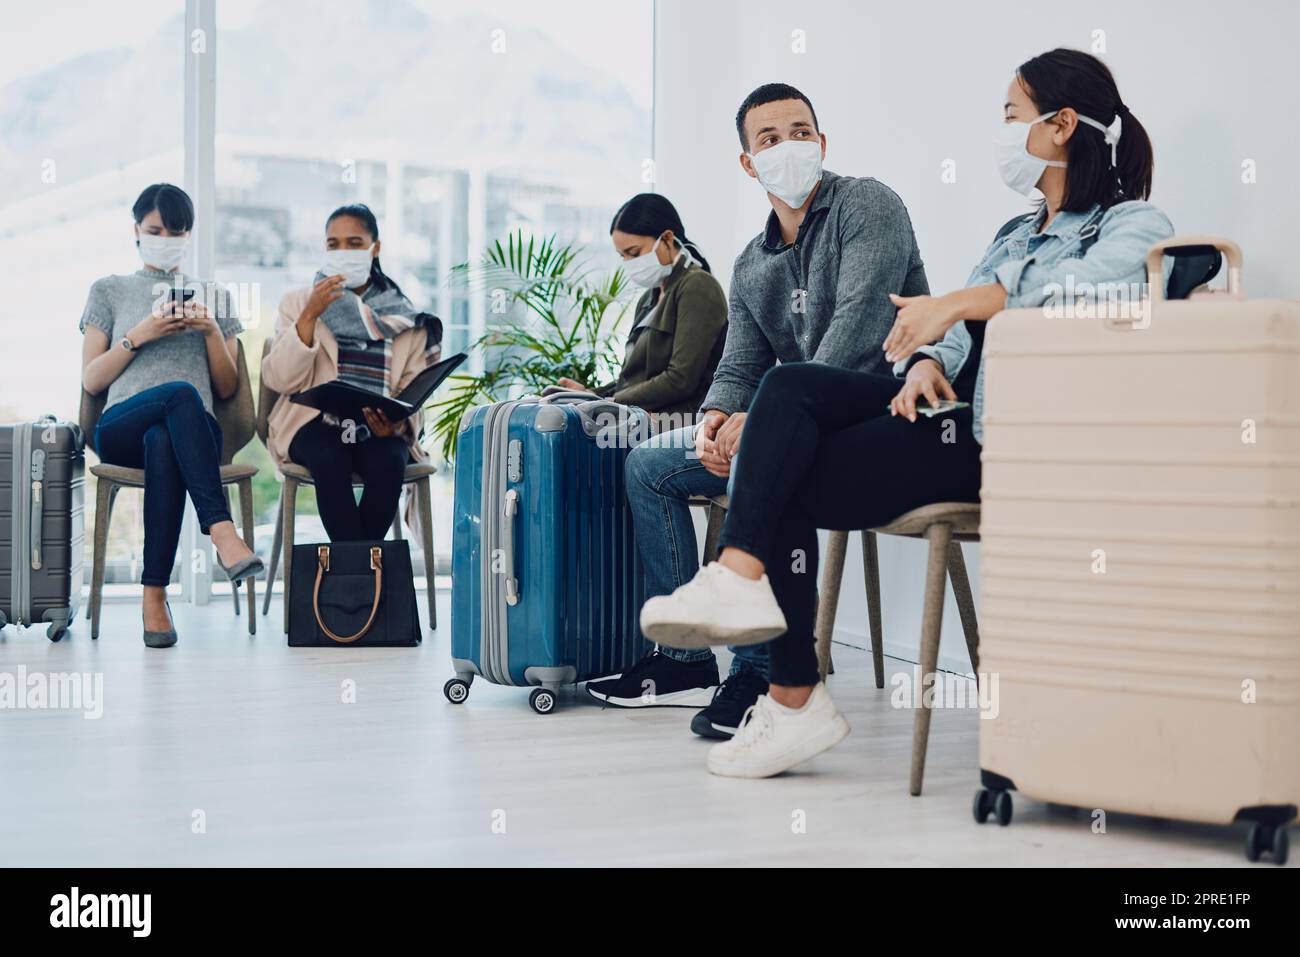 Groupe de personnes voyageant pendant une attente de covid dans une file d'attente à un salon d'aéroport portant des masques de protection. Les touristes qui se trouvent dans une file d'attente dans un centre de voyage public pendant une pandémie de coronavirus Banque D'Images